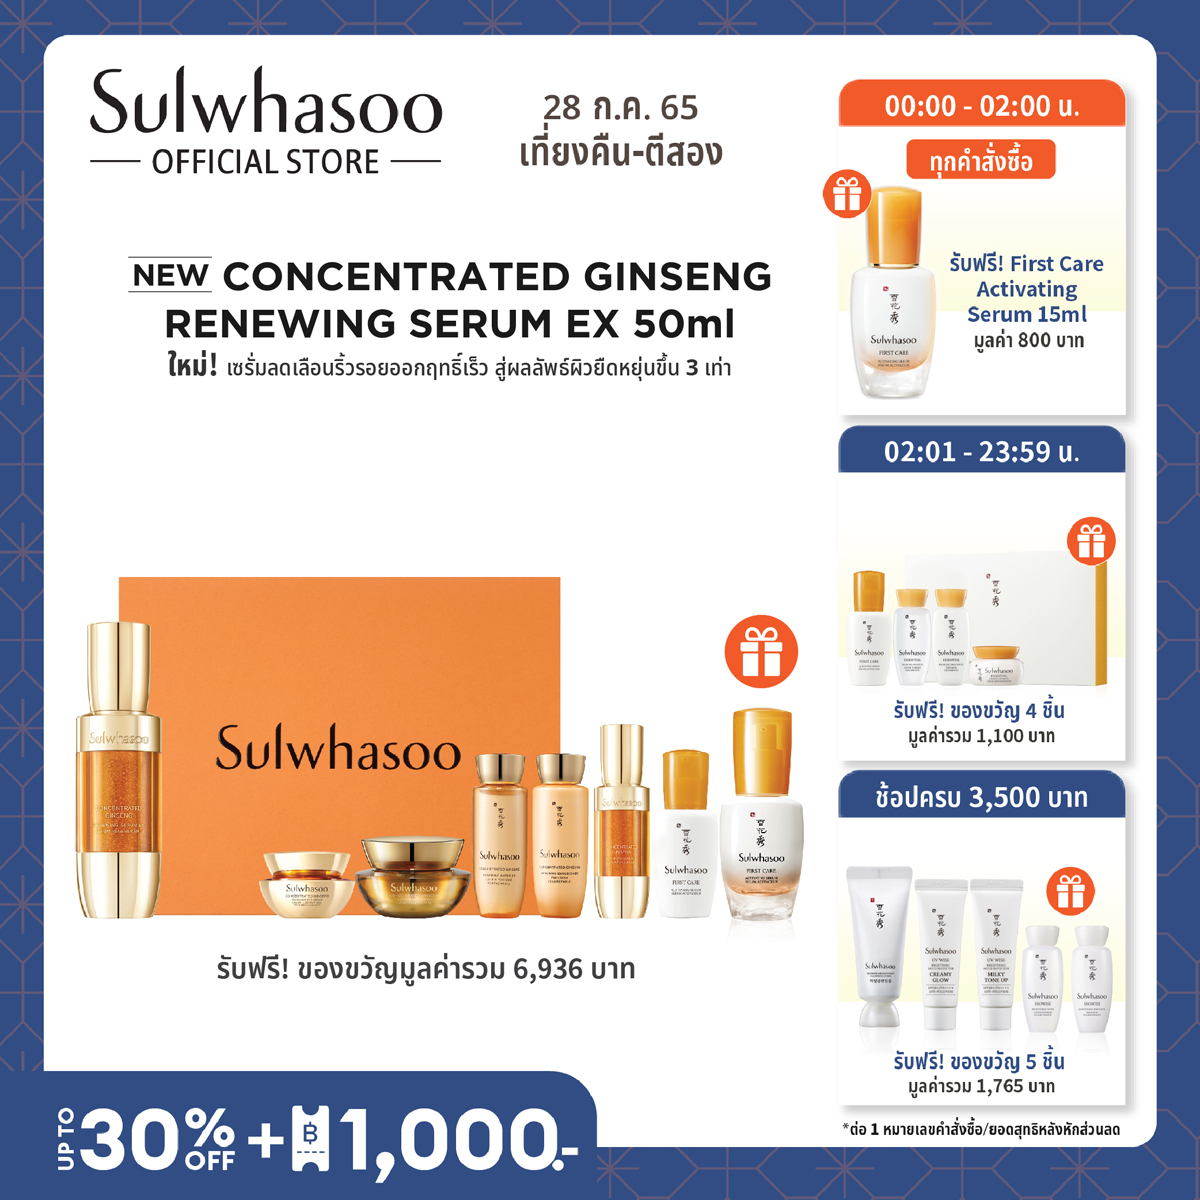 [สูตรใหม่] SULWHASOO Concentrated Ginseng Renewing Serum EX 50ml. โซลวาซู เซรั่มบำรุงผิวหน้า ผิวหน้าแน่นกระชับ ลดริ้วรอยและสัญญาณแห่งวัย รูขุมขนแลดูเล็กลง